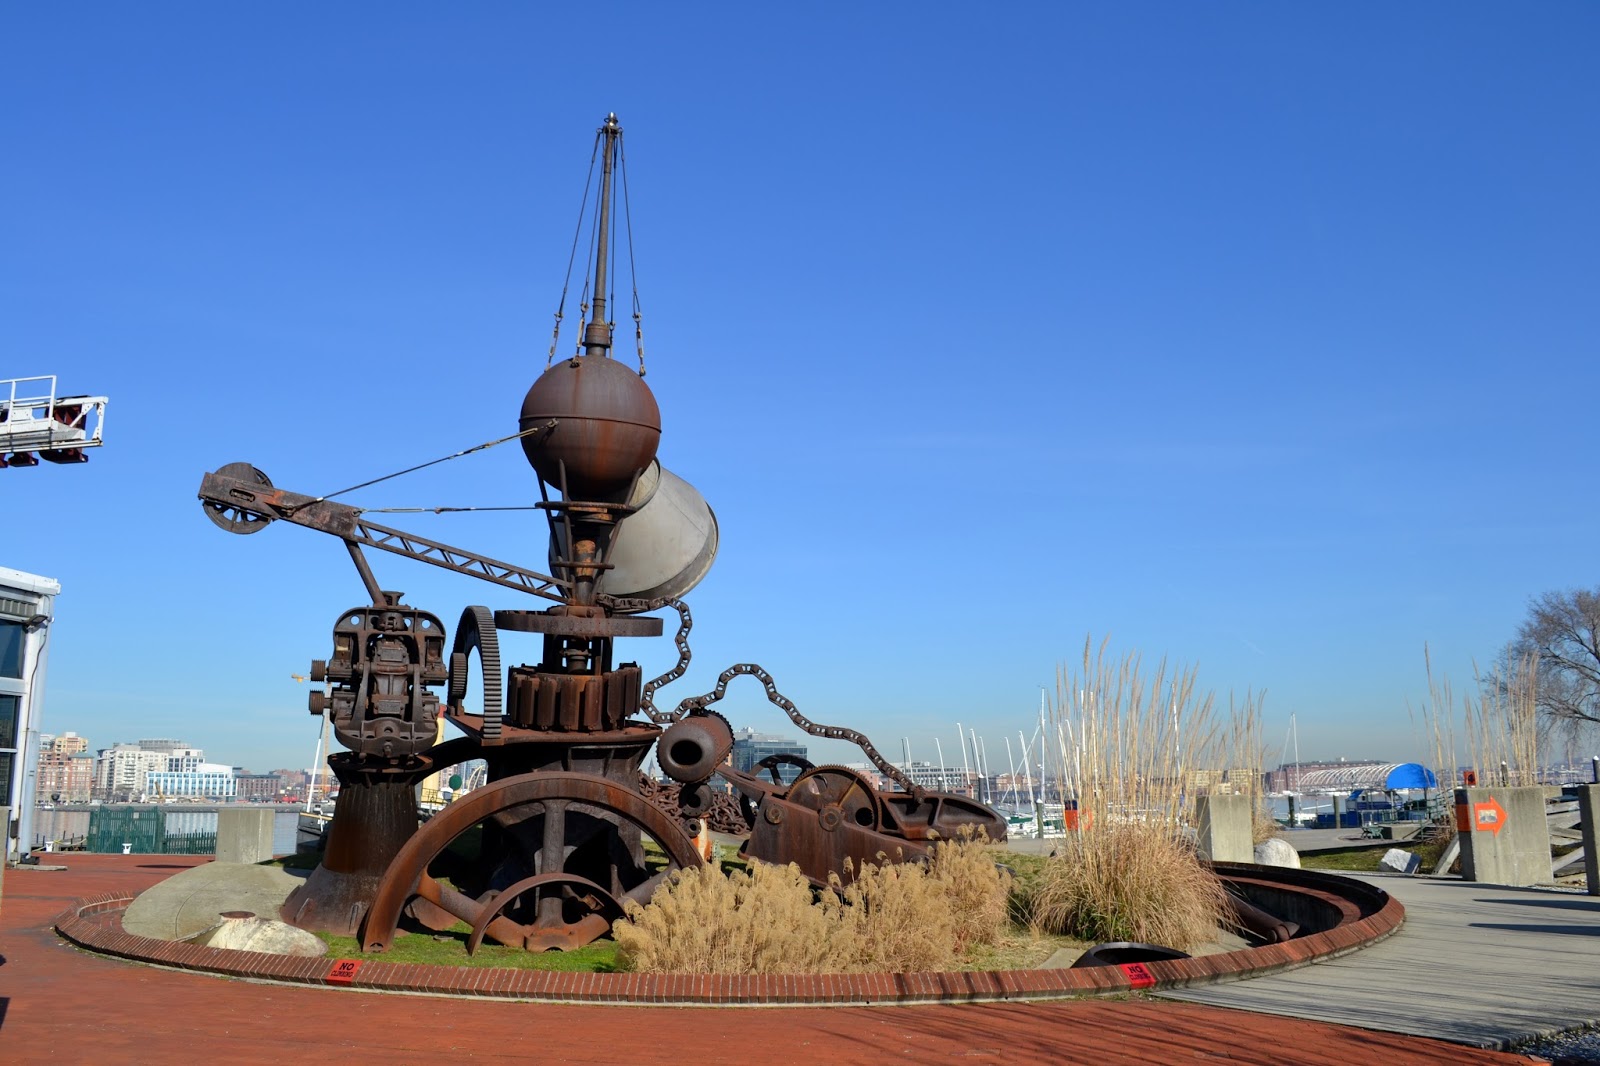 Балтиморский музей промышленности, Балтимор, Мэриленд (The Baltimore Museum of Industry)